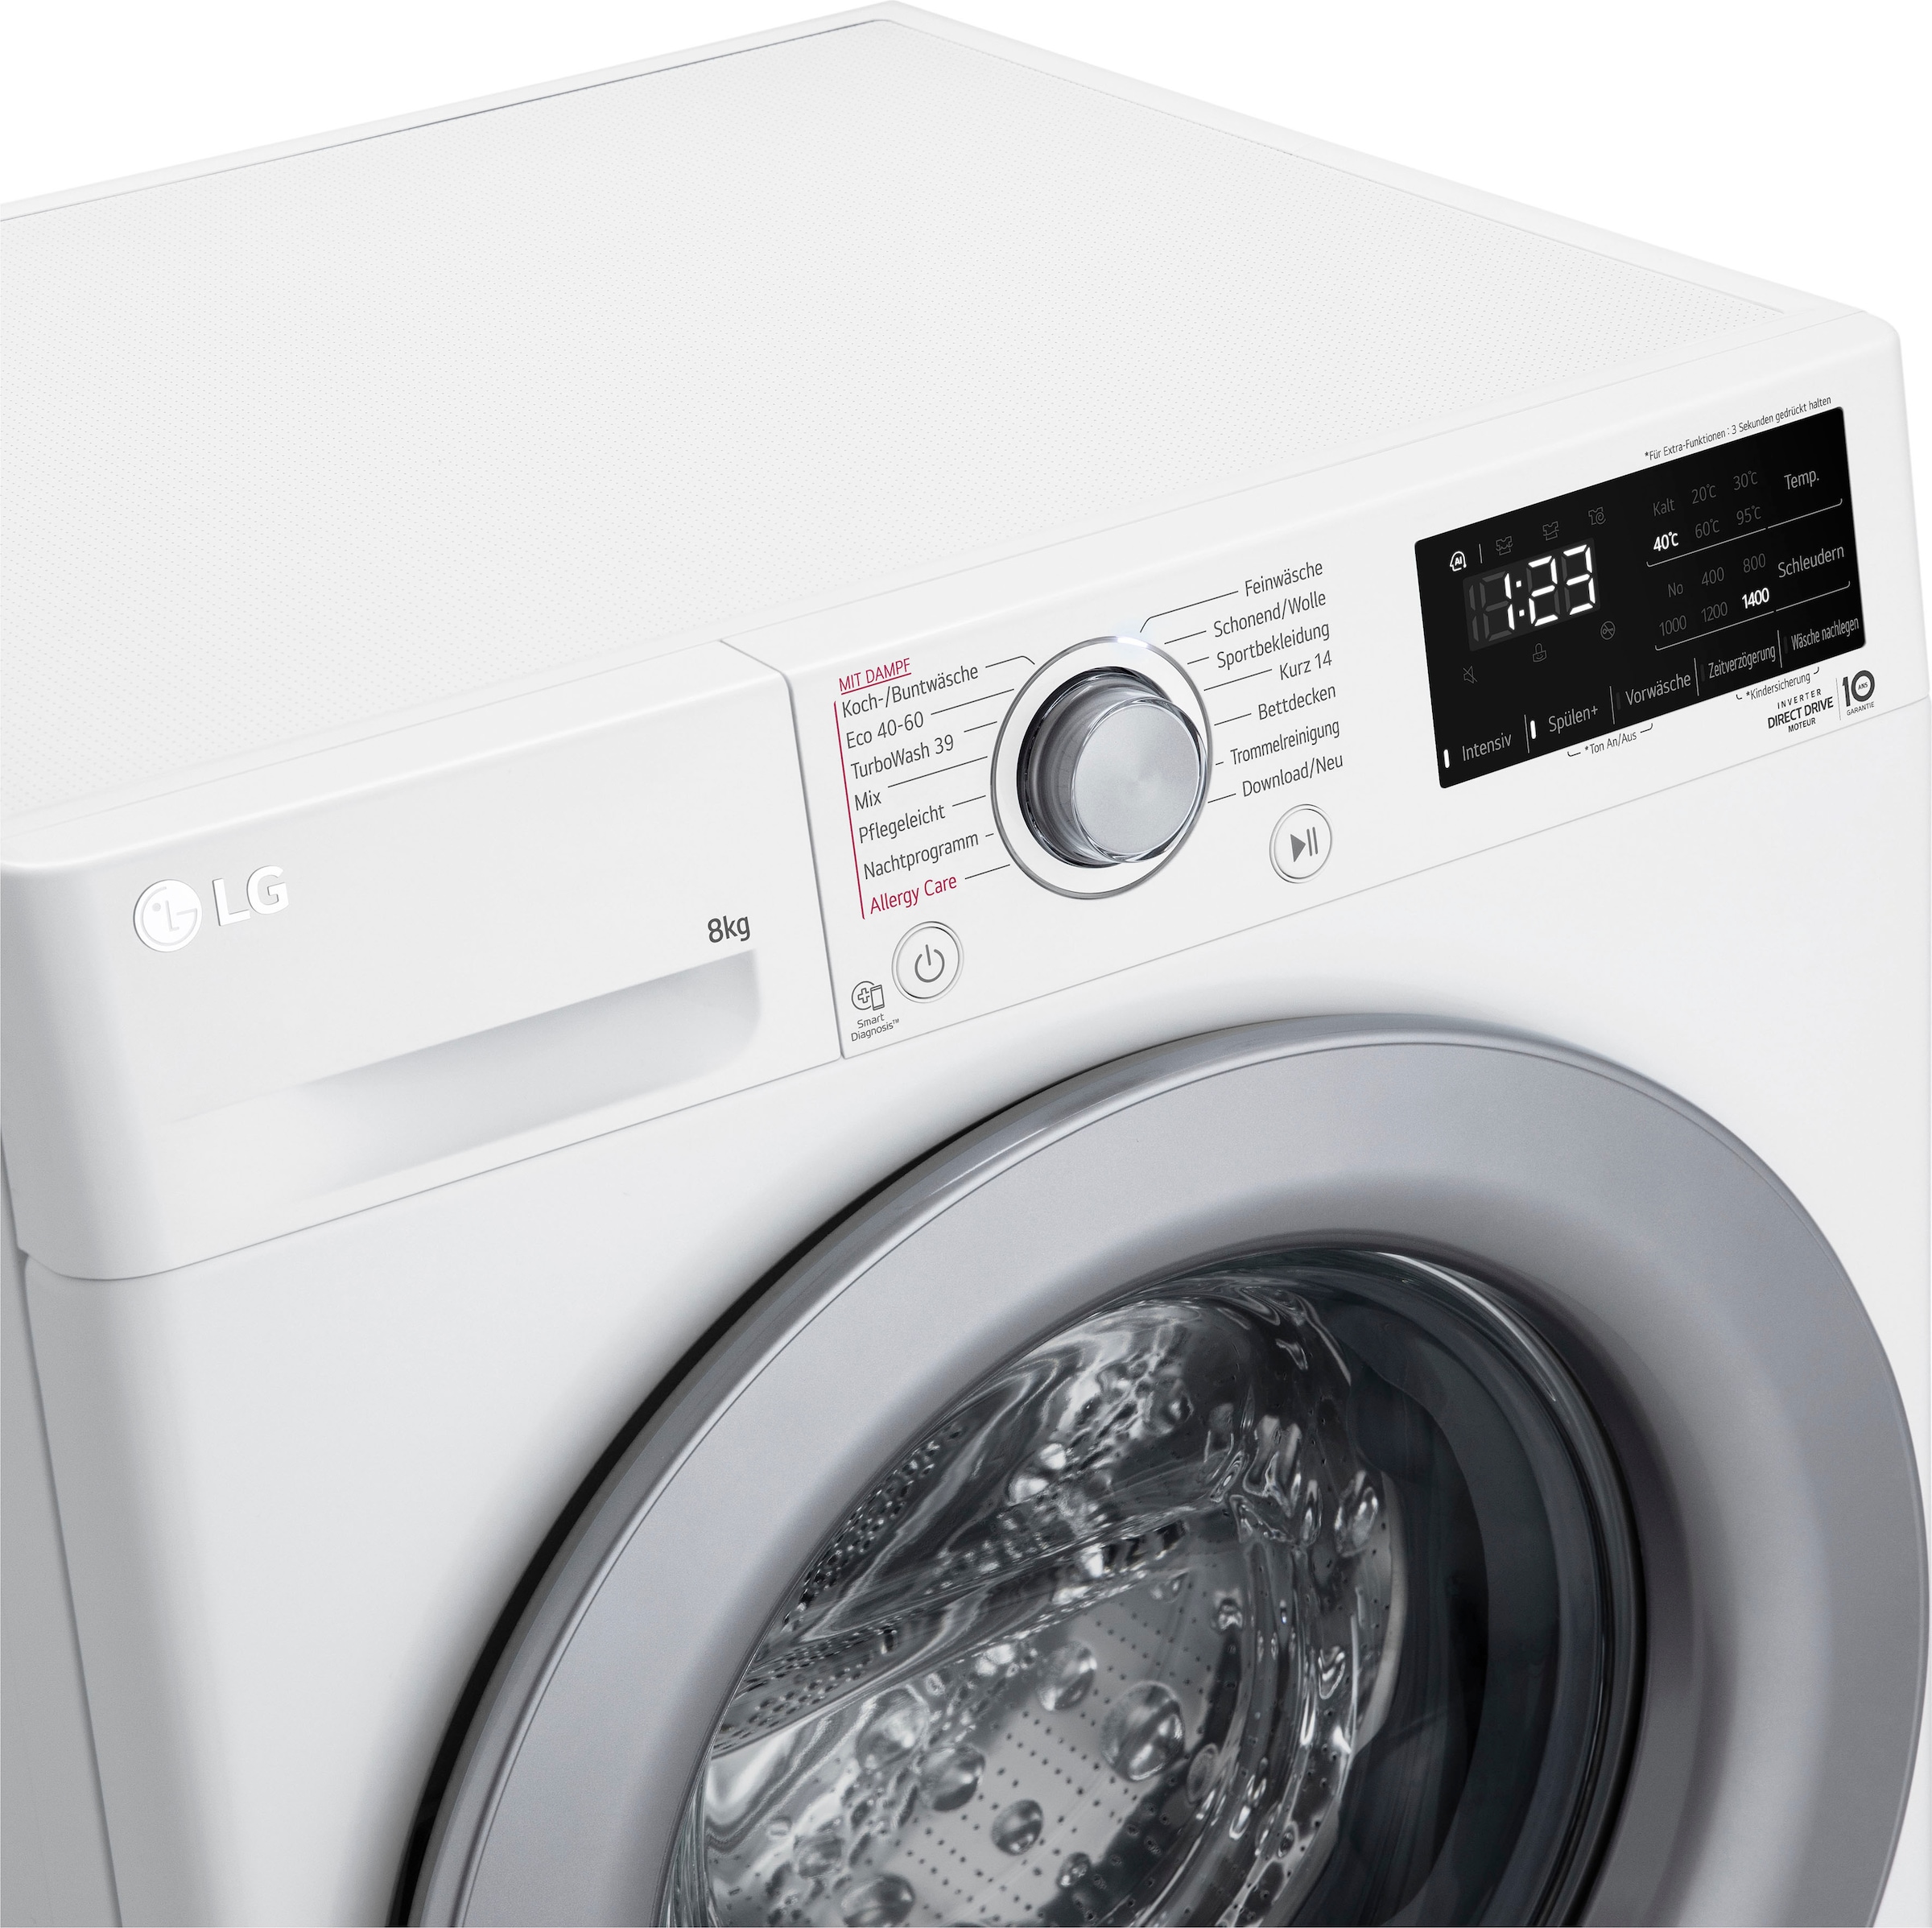 LG Waschmaschine »F4WV3284«, Serie 3, kg, F4WV3284, U/min bei 1400 8 bestellen OTTO